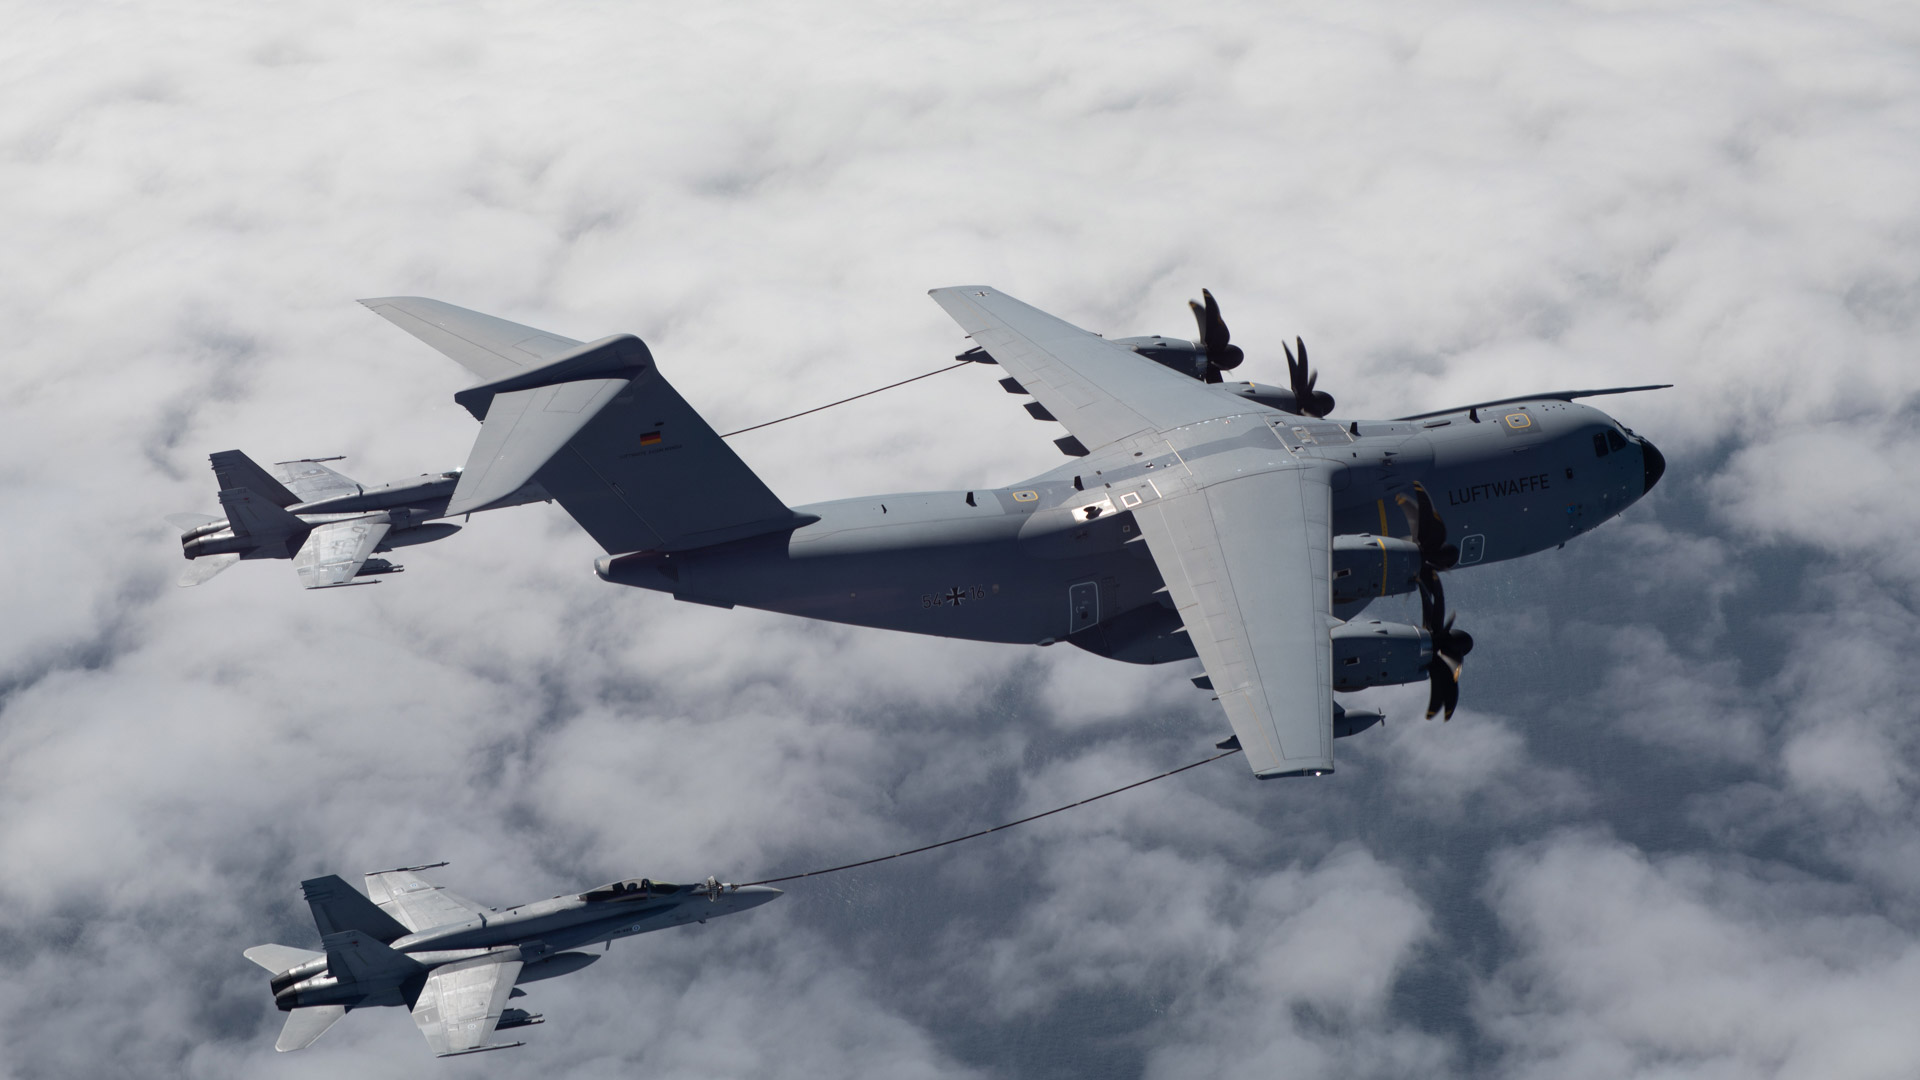 La Real Fuerza Aérea de Noruega compartió imágenes del ejercicio aéreo. Esta foto muestra un avión A400 de abastecimiento de combustible y dos aviones F18